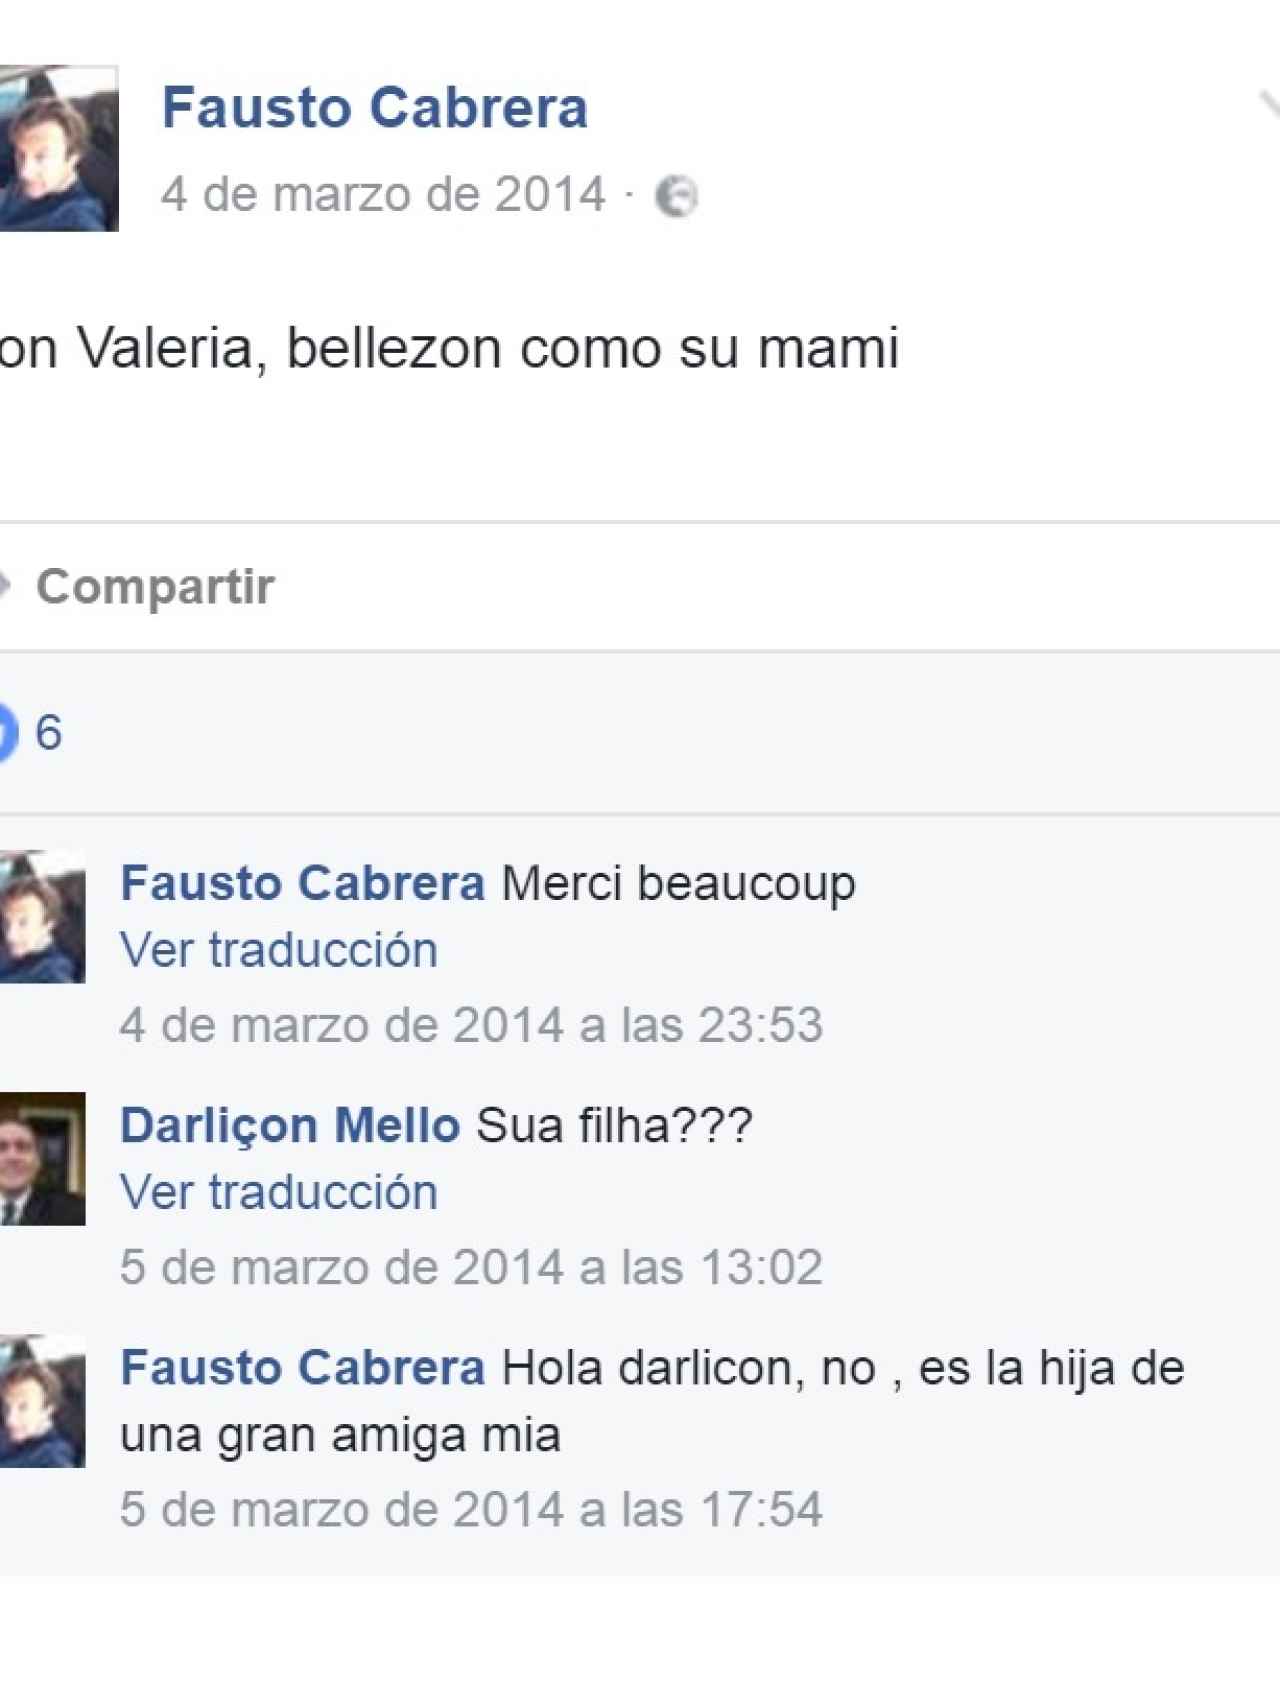 Conversación de Fausto Cabrera sobre su relación con Valeria y Quer y su madre